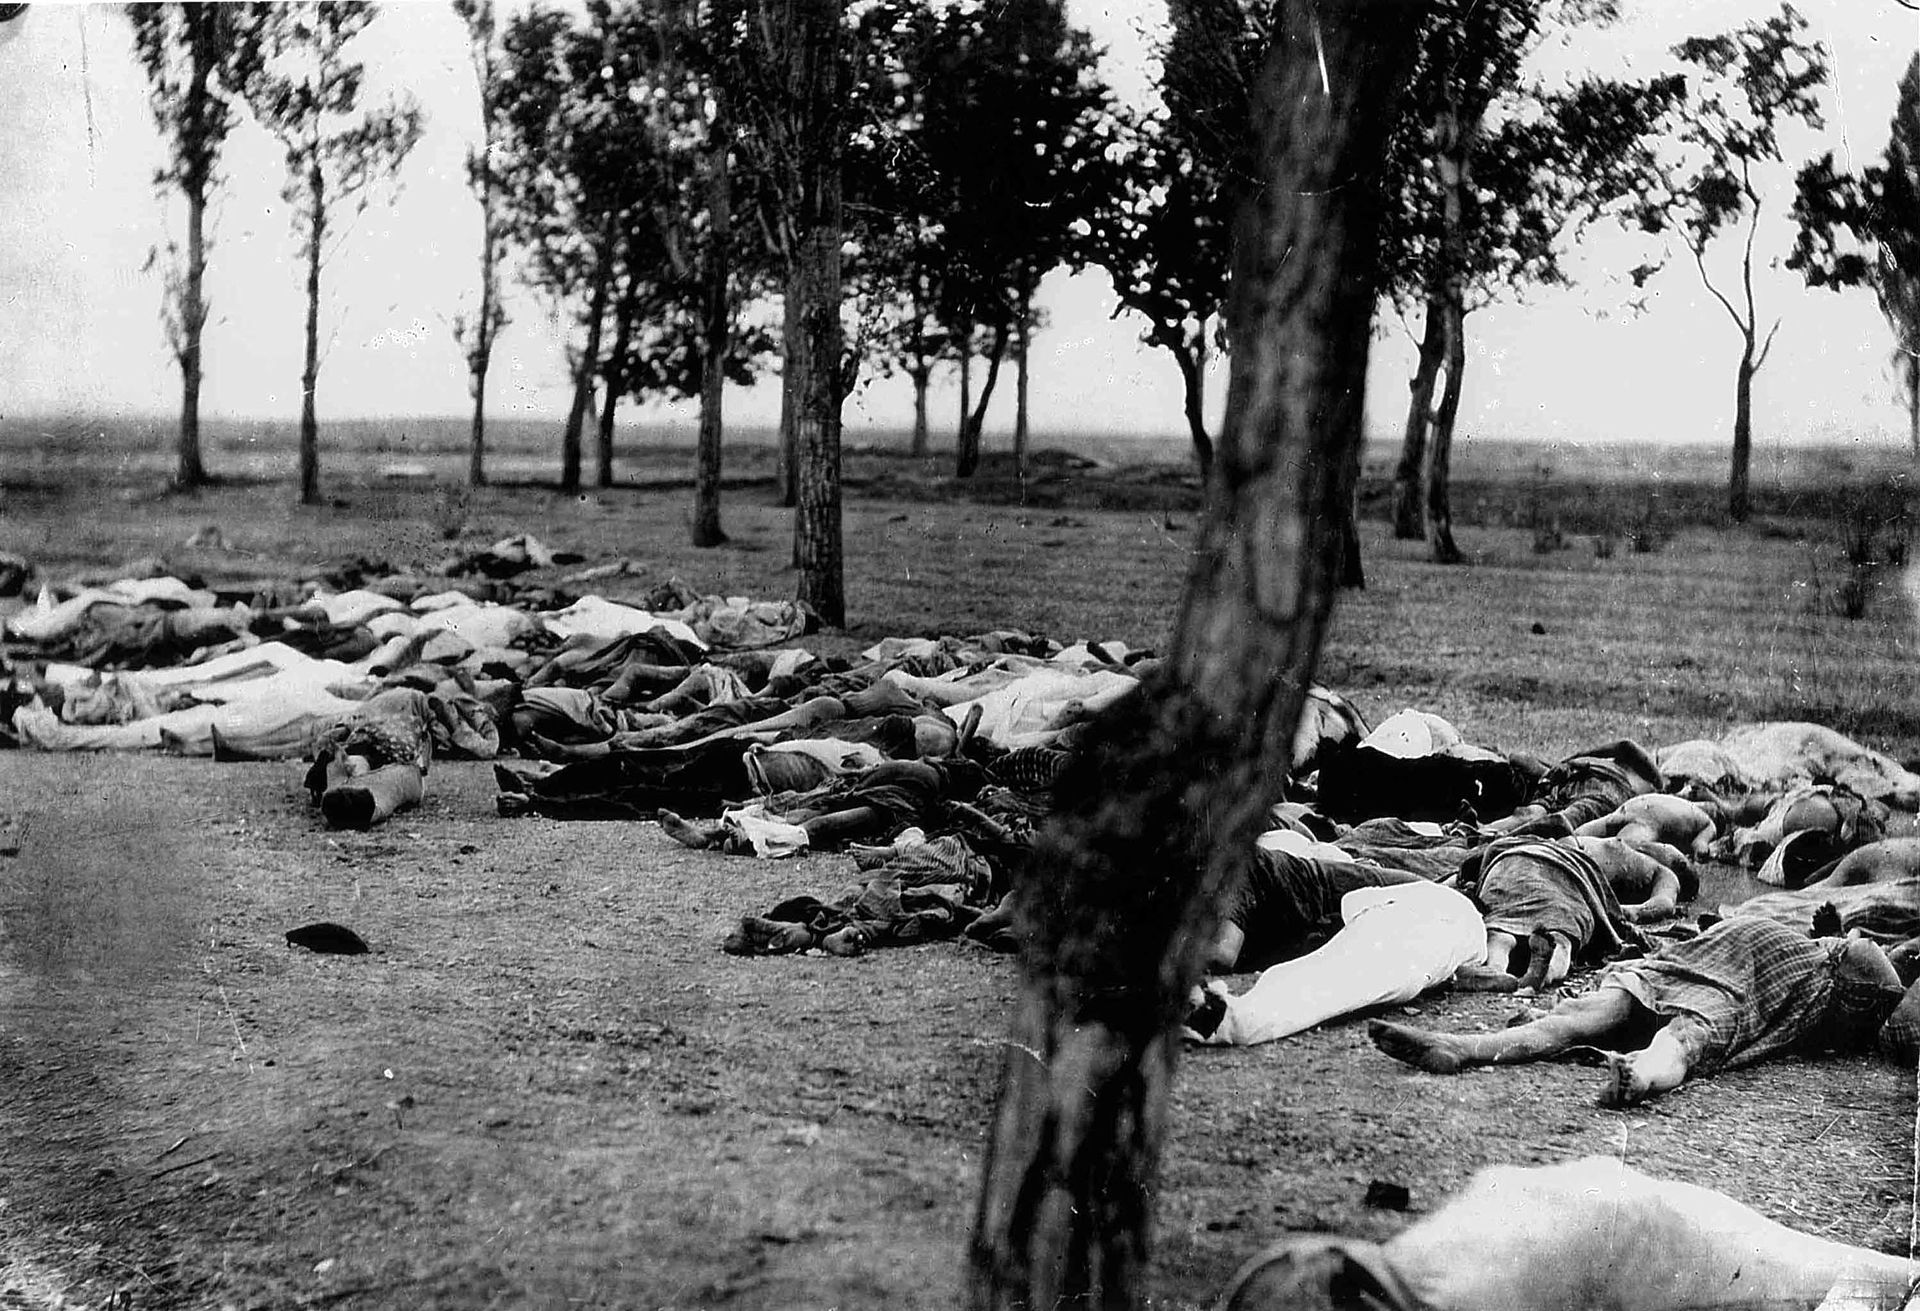 مقتل الأرمن خلال الإبادة الجماعية الصورة مأخوذة من قصة السفير مورجينثاو كتبها هنري مورجينثاو الأب ونشرت في عام 1918 الأصل (ويكيميديا)